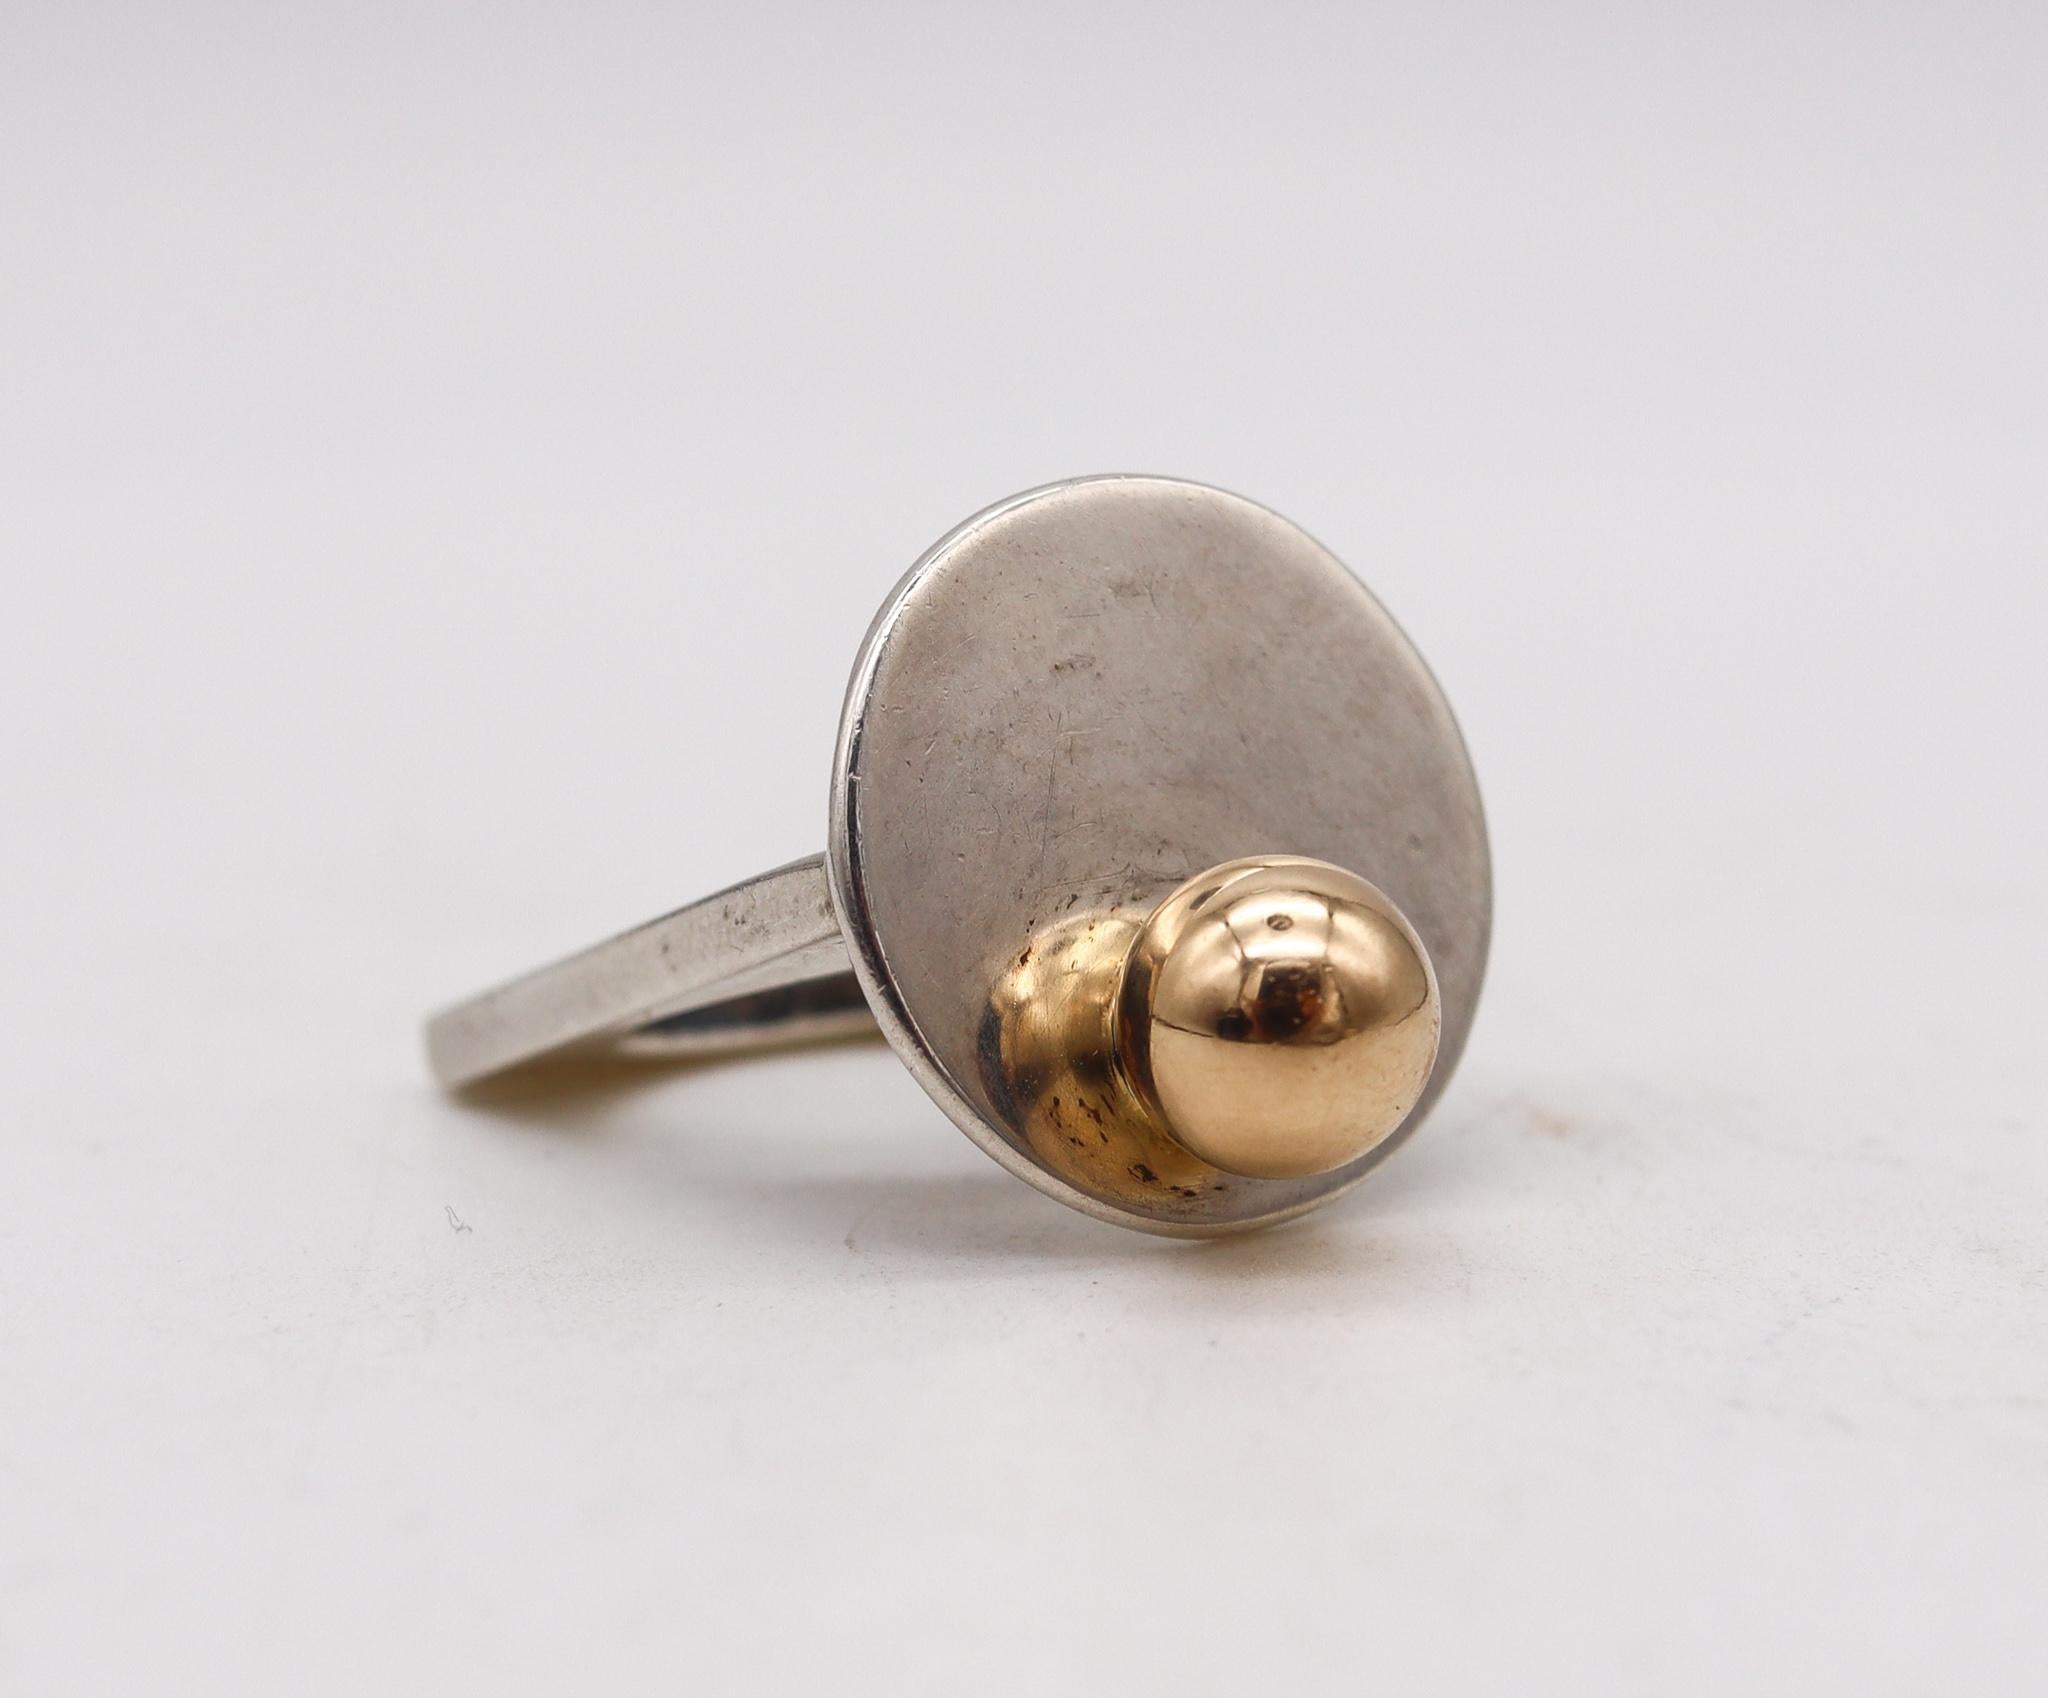 Geometrischer Ring, entworfen von Pierre Cardin.

Wunderschönes modernistisches Stück, das der Pariser Modedesigner Pierre Cardin in den 1970er Jahren in Frankreich entworfen hat. Dieser geometrische, skulpturale Ring wurde mit minimalistischen